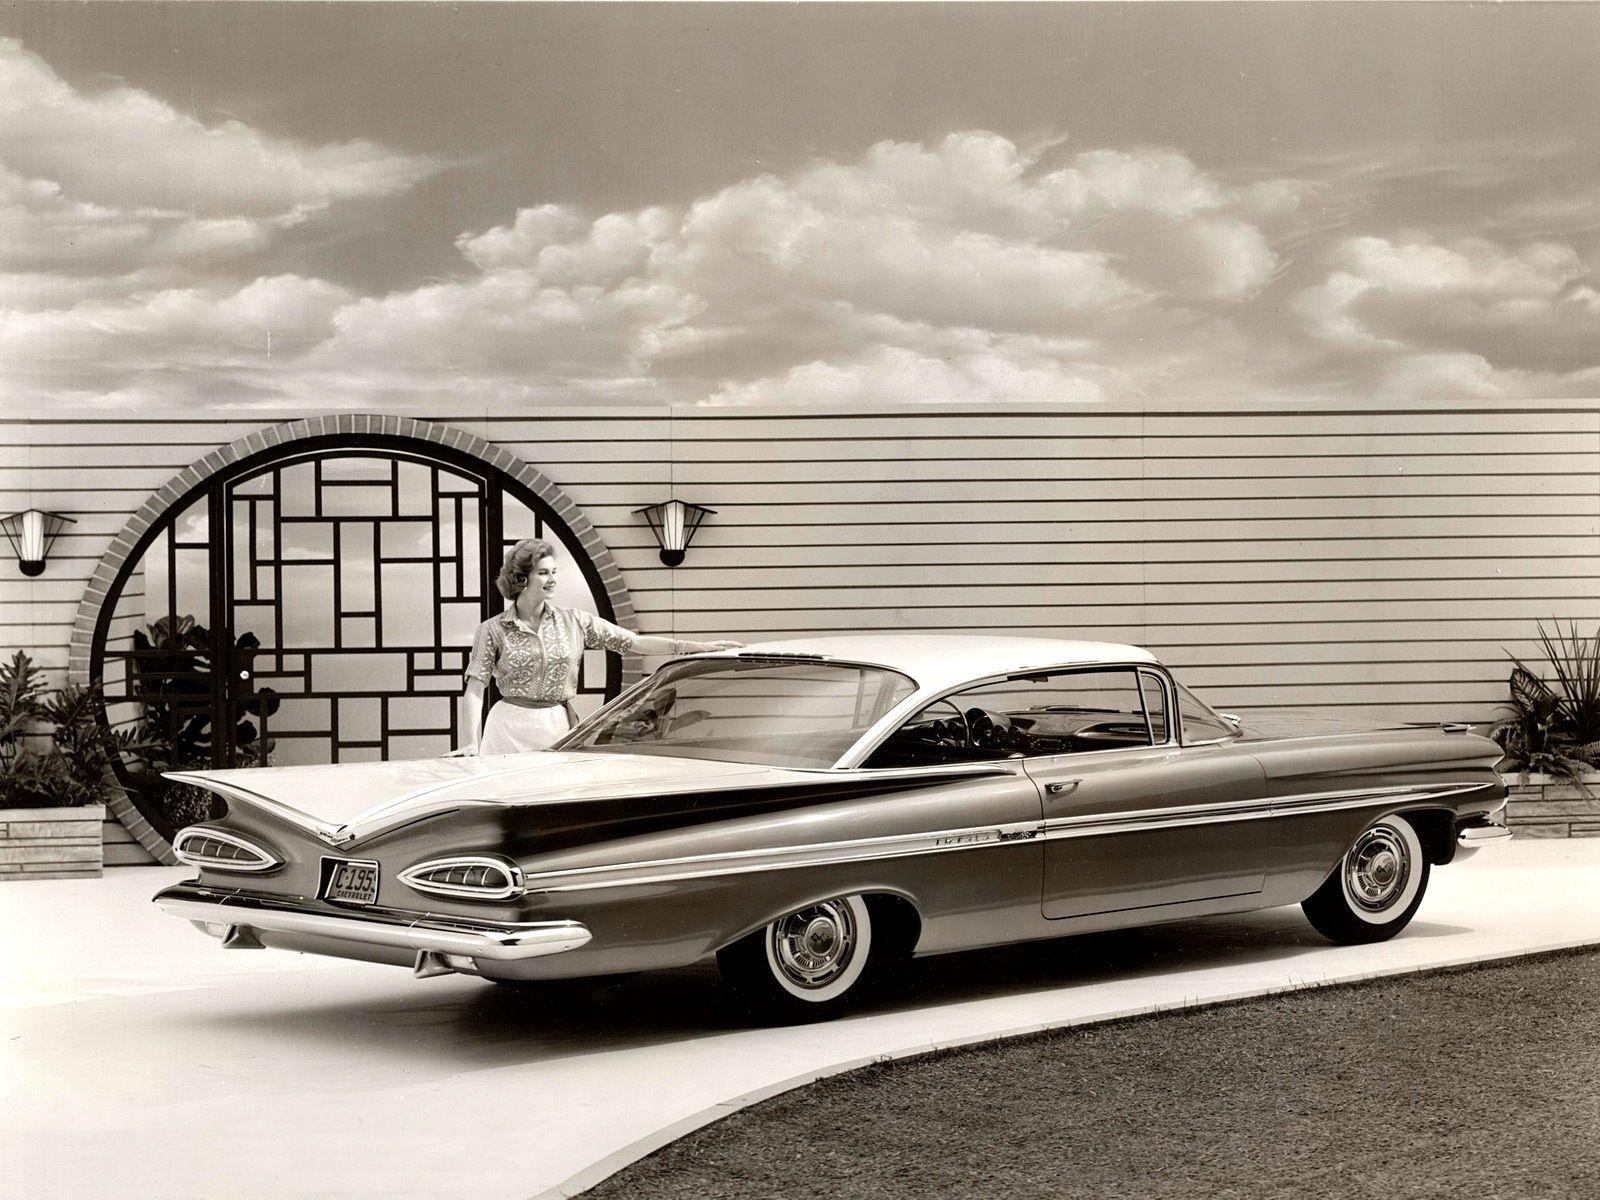 image about 1959 impalas. Chevy, El camino